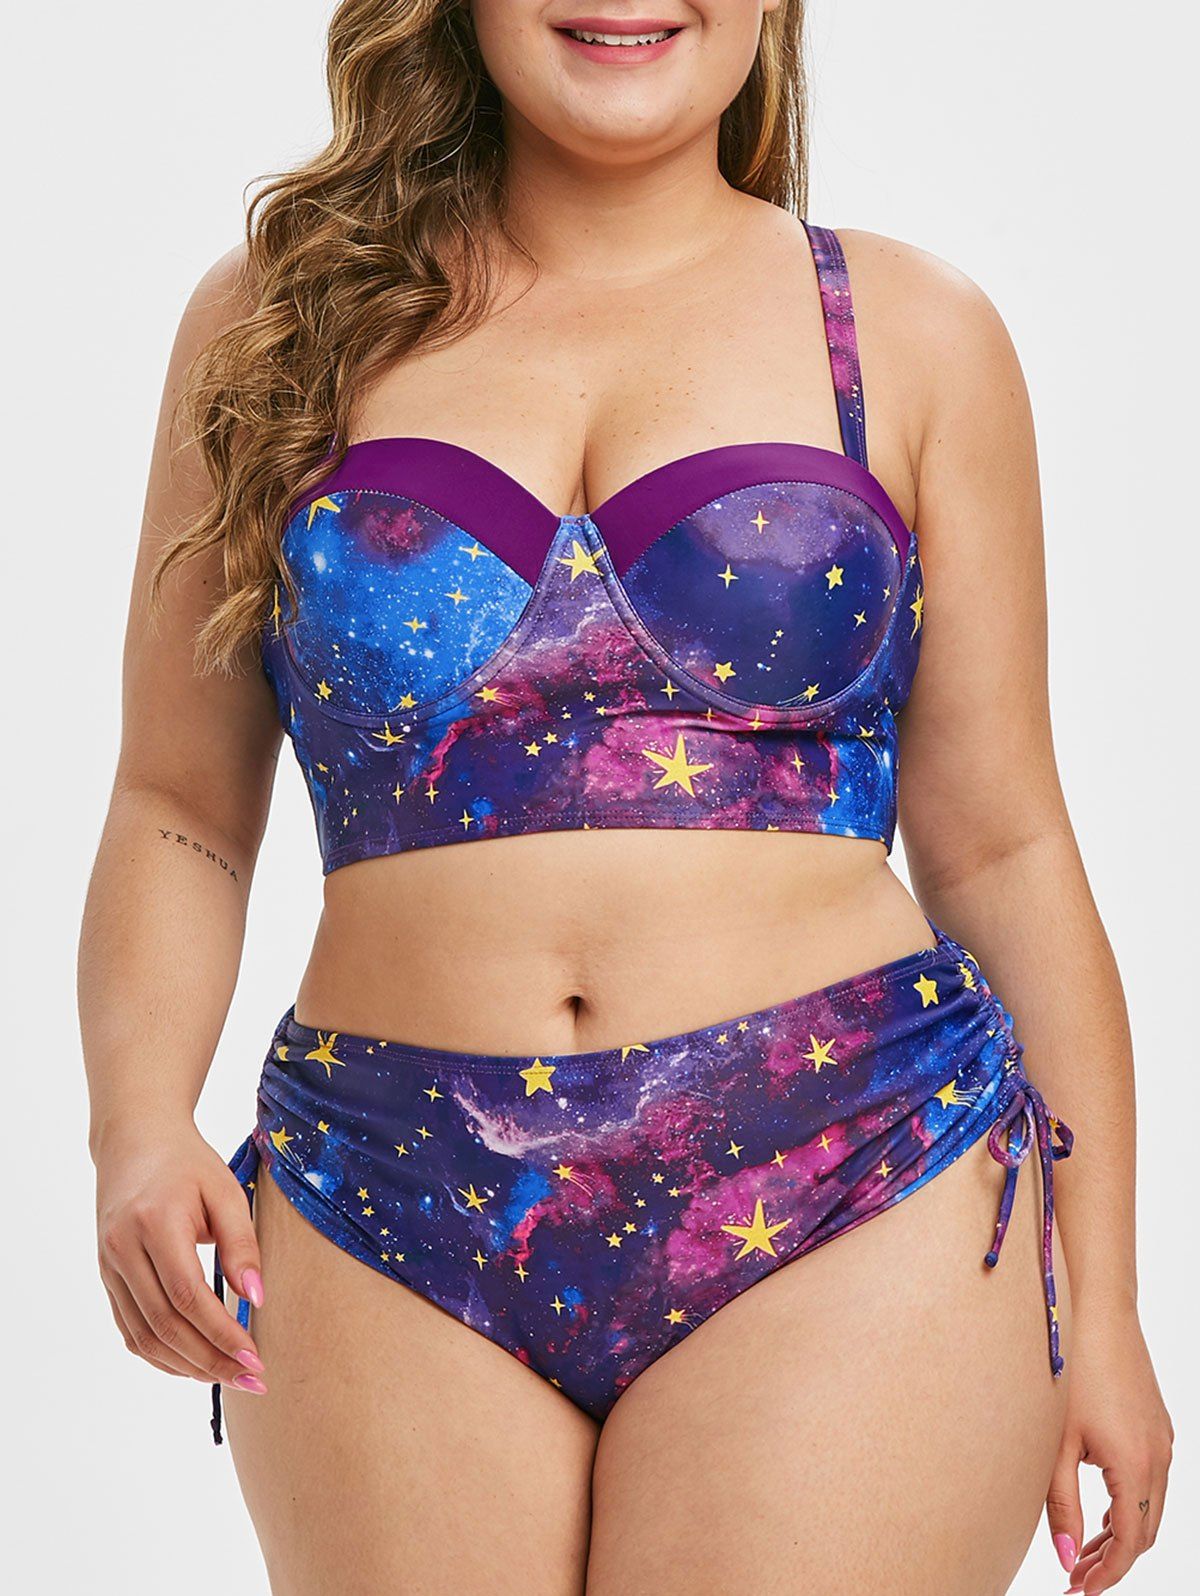 Galaxy Print Push Up Cinched Plus Size Bikini Swimsuit - NEBULA L